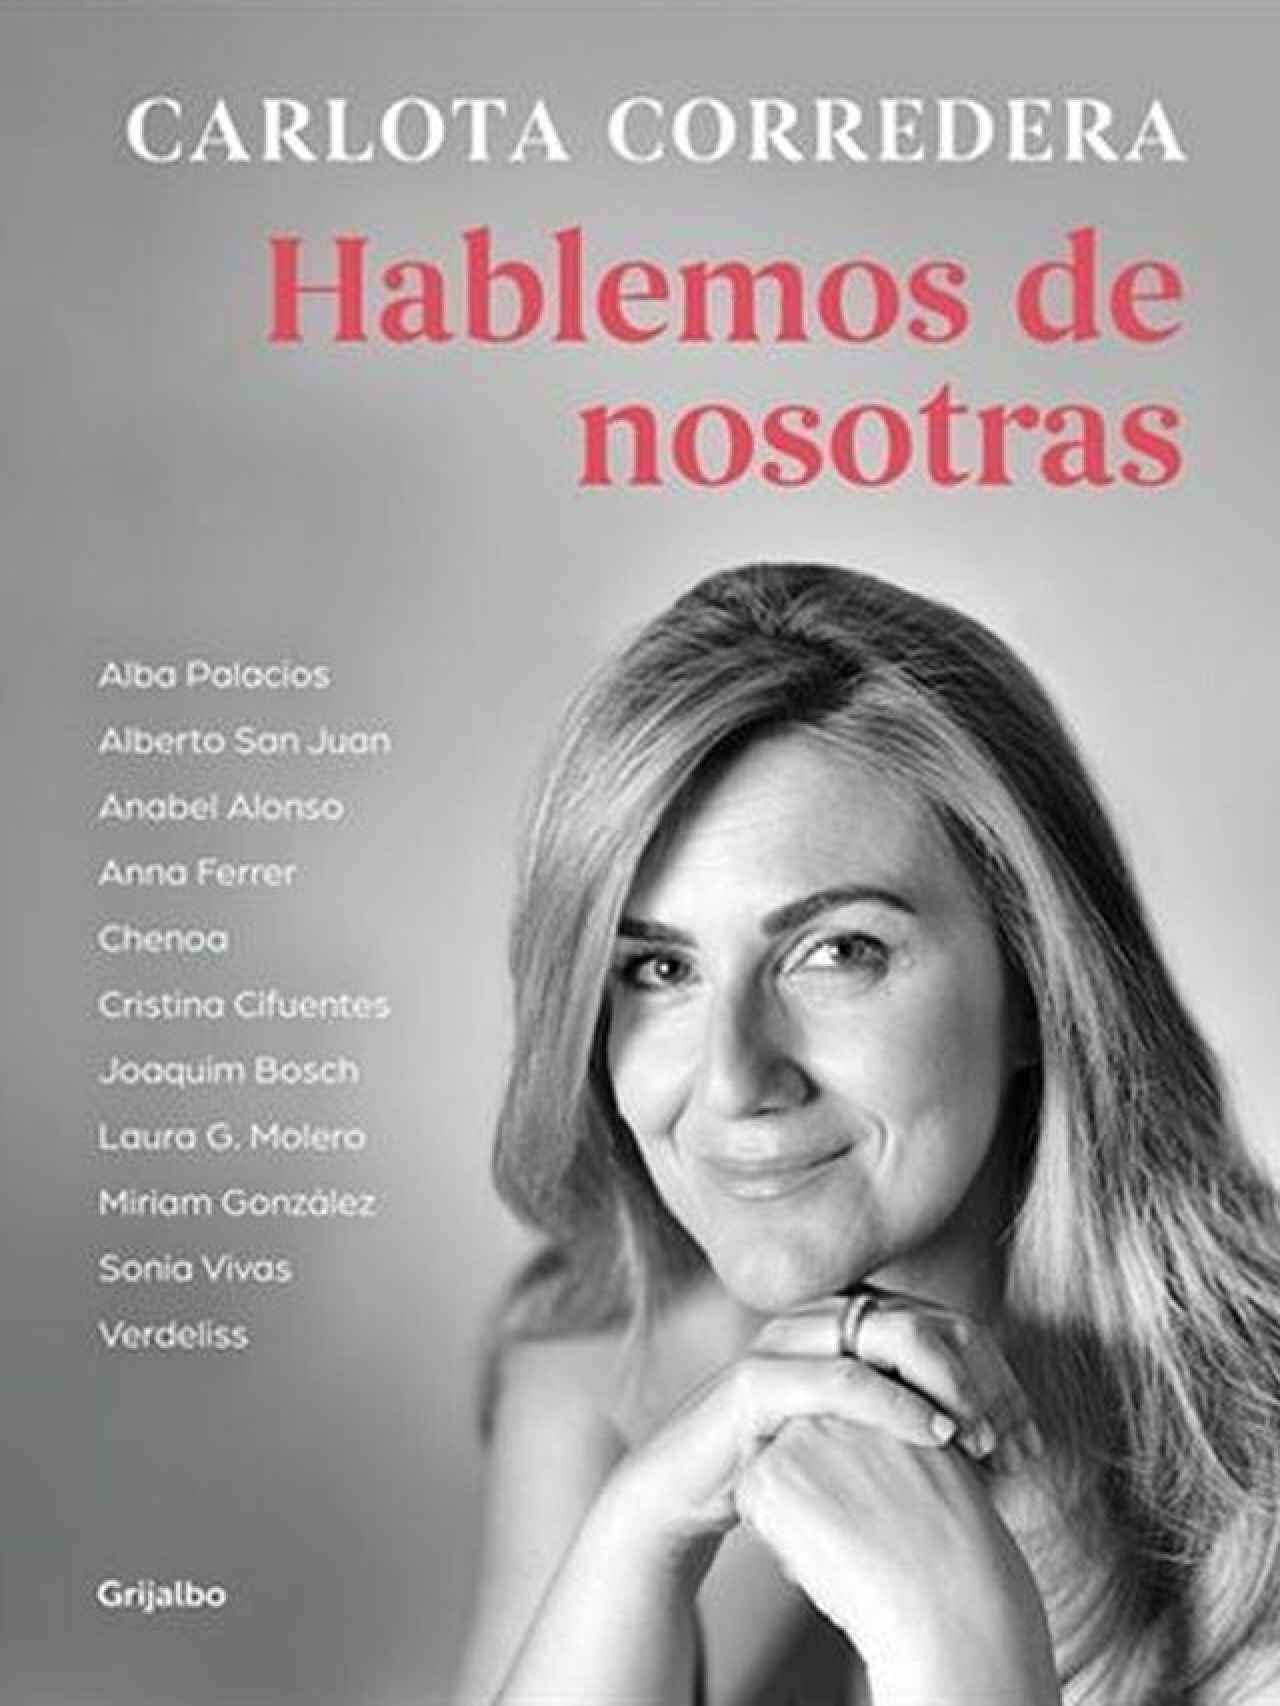 Portada de 'Hablemos de nosotras', el nuevo libro de Carlota Corredera sobre feminismo.